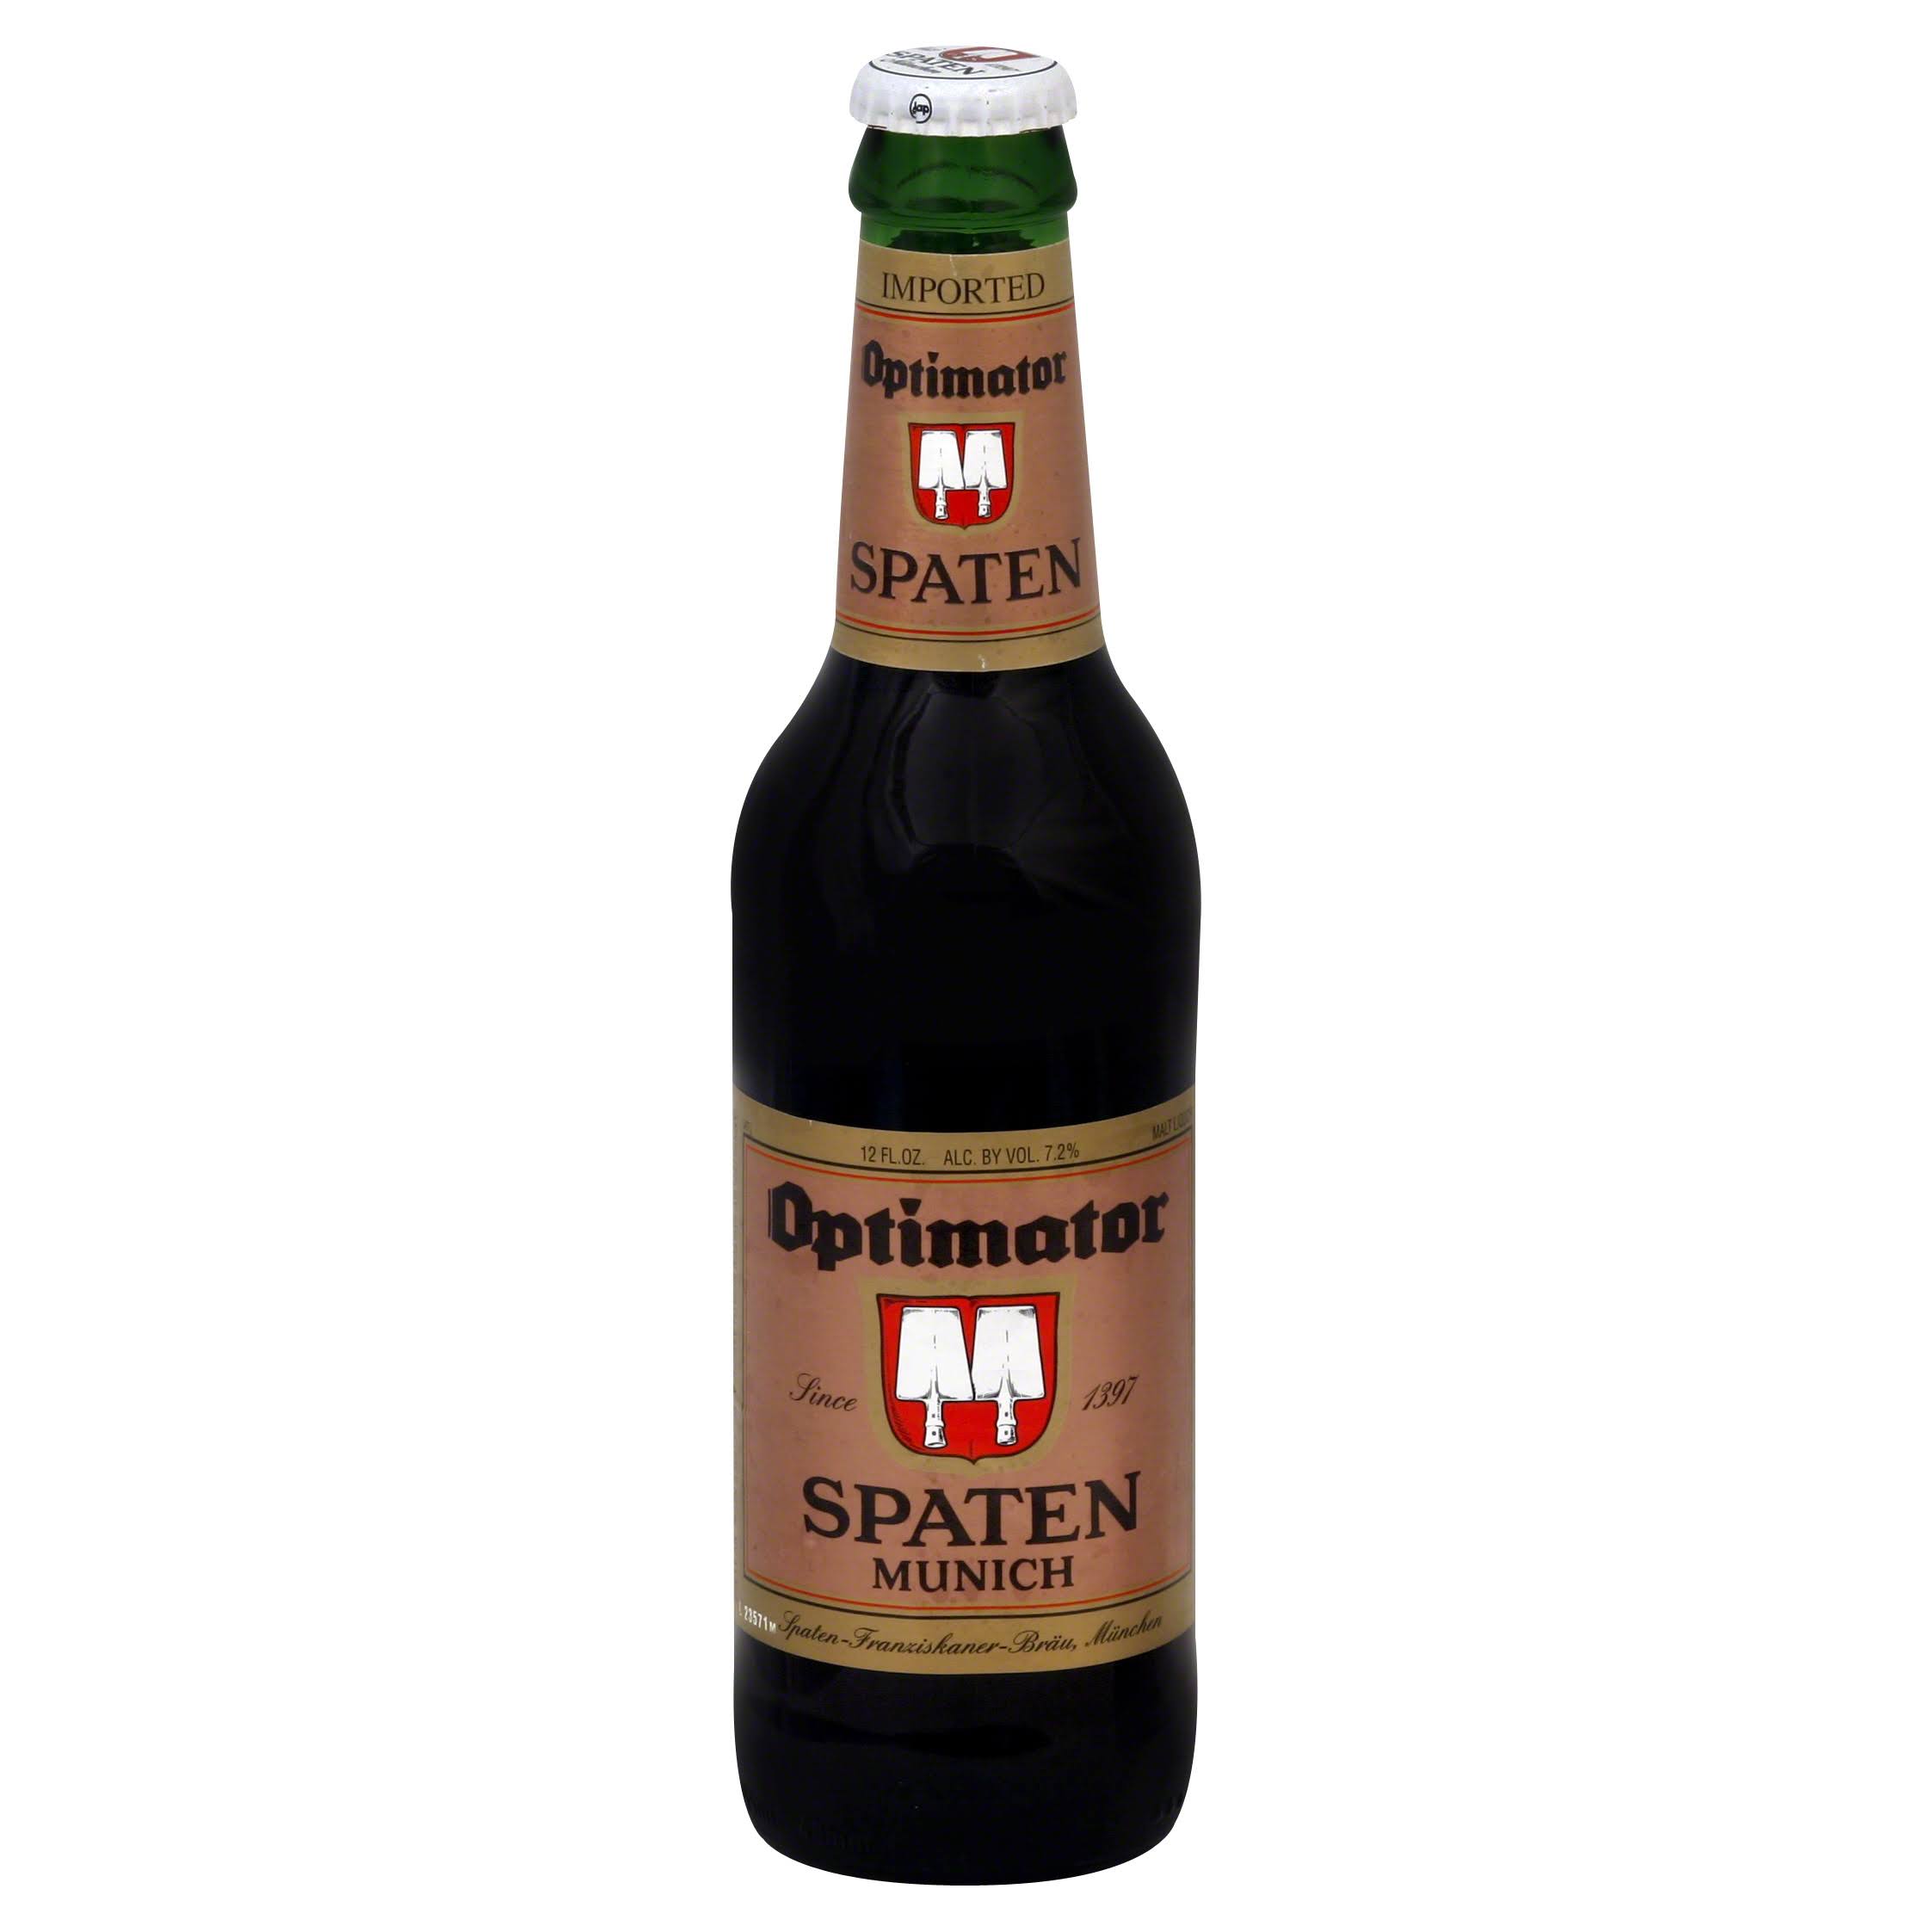 Northstar Spaten Optimator Beer - 12oz